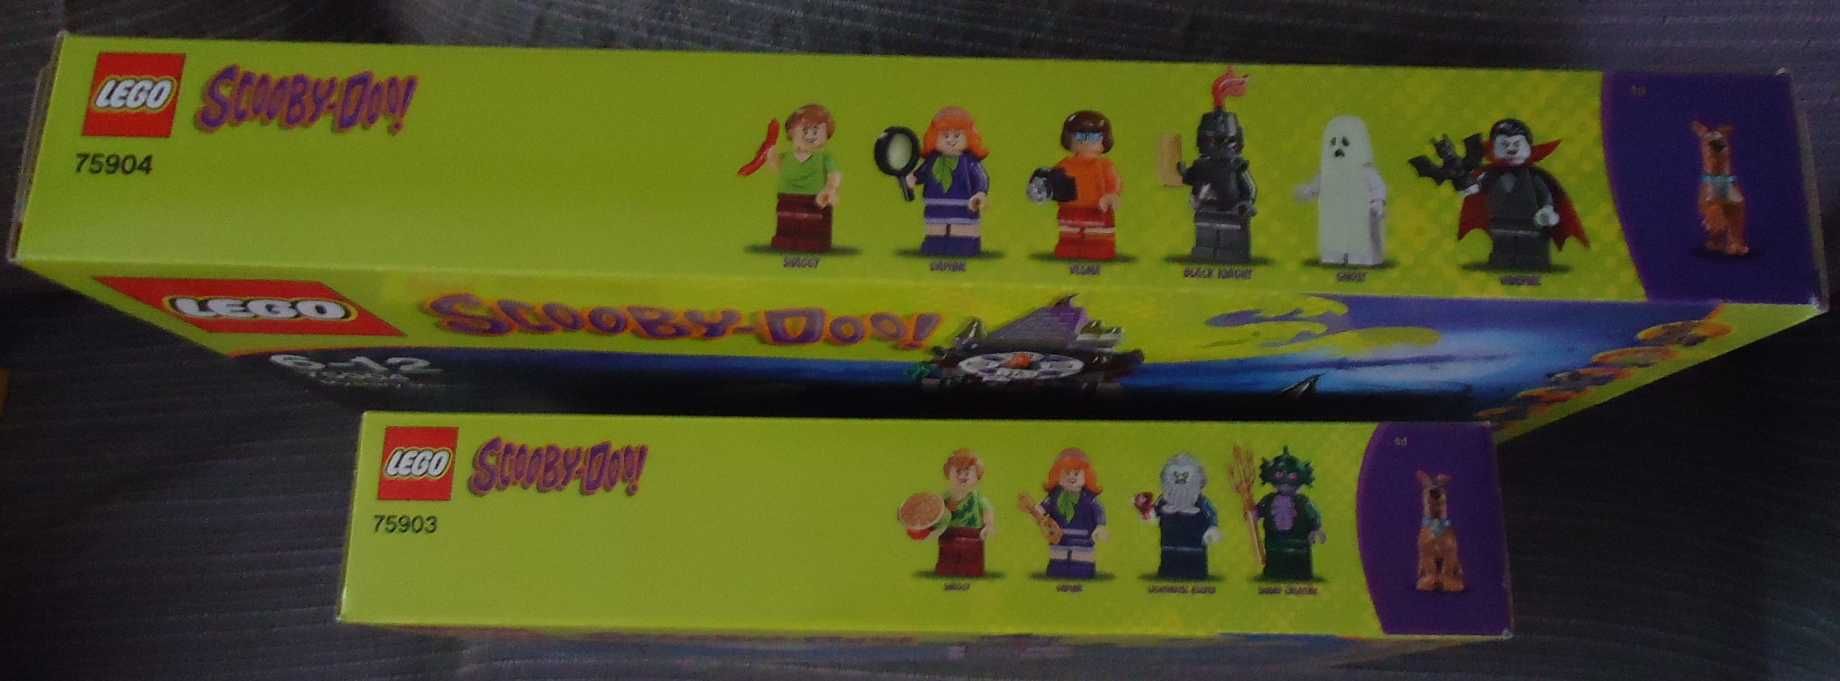 LEGO® Scooby-Doo 75903 e 75904 - Novos